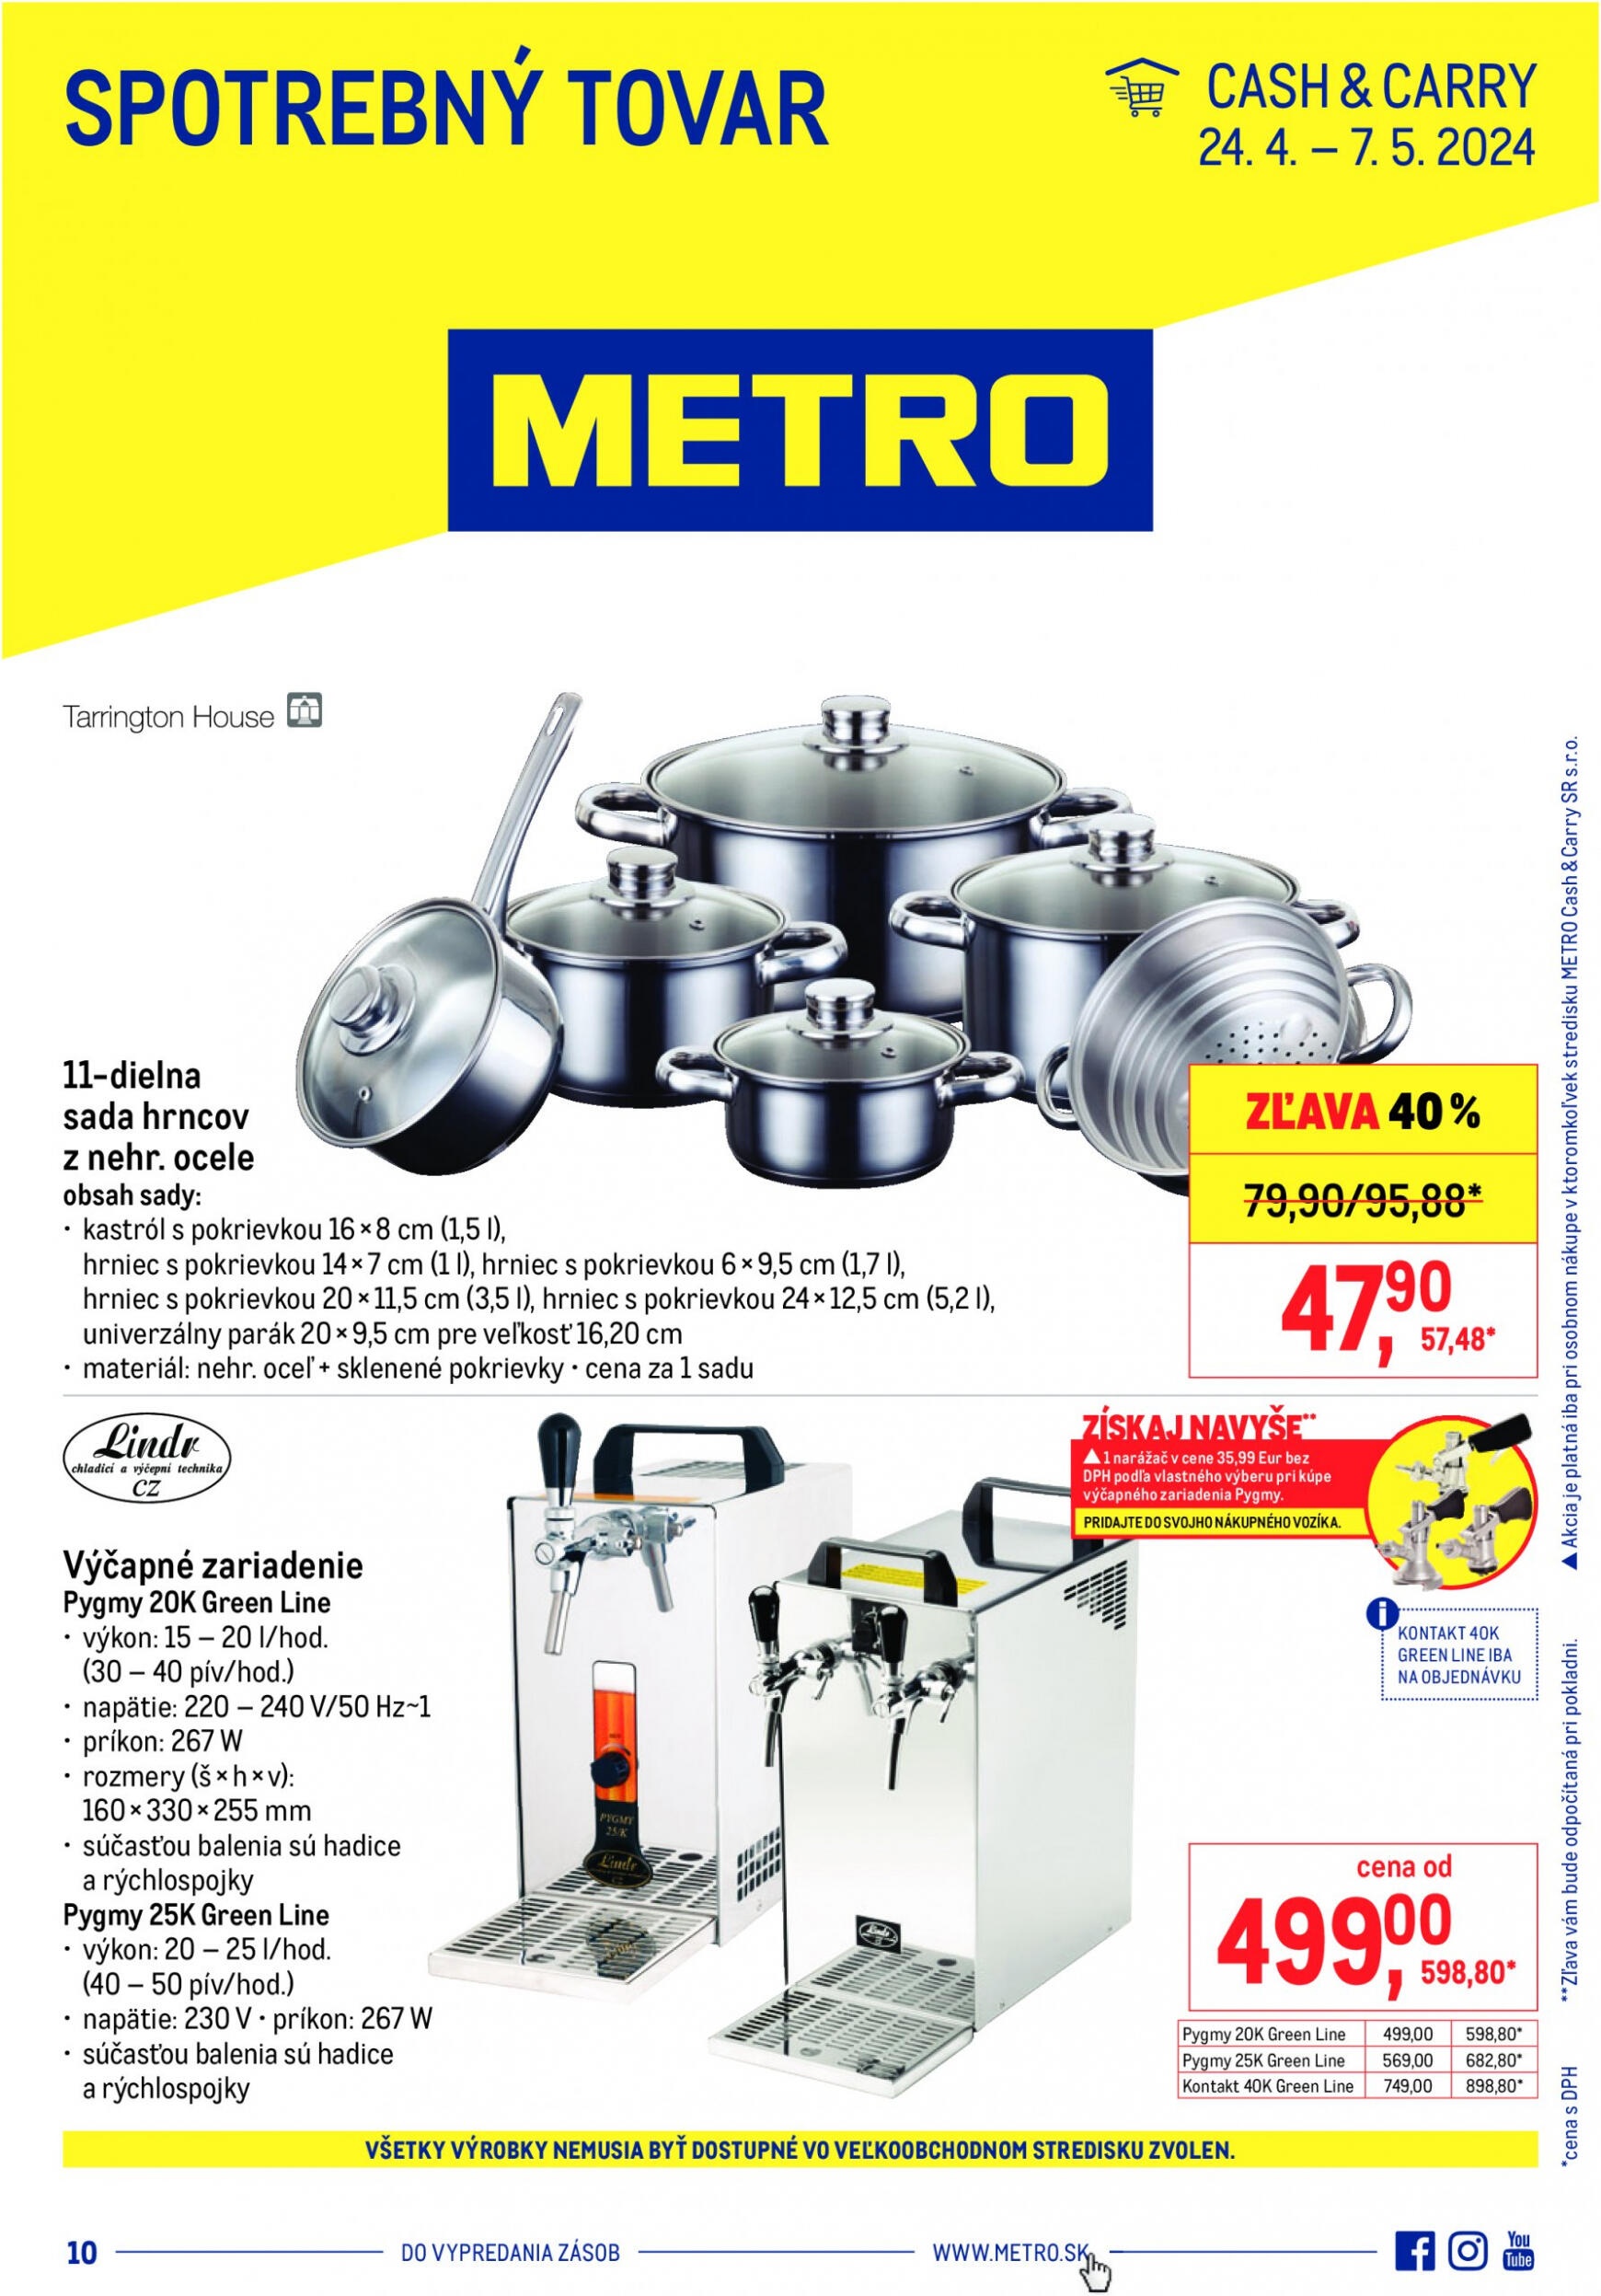 metro - Metro - Spotrebný tovar leták platný od 24.04. - 07.05.